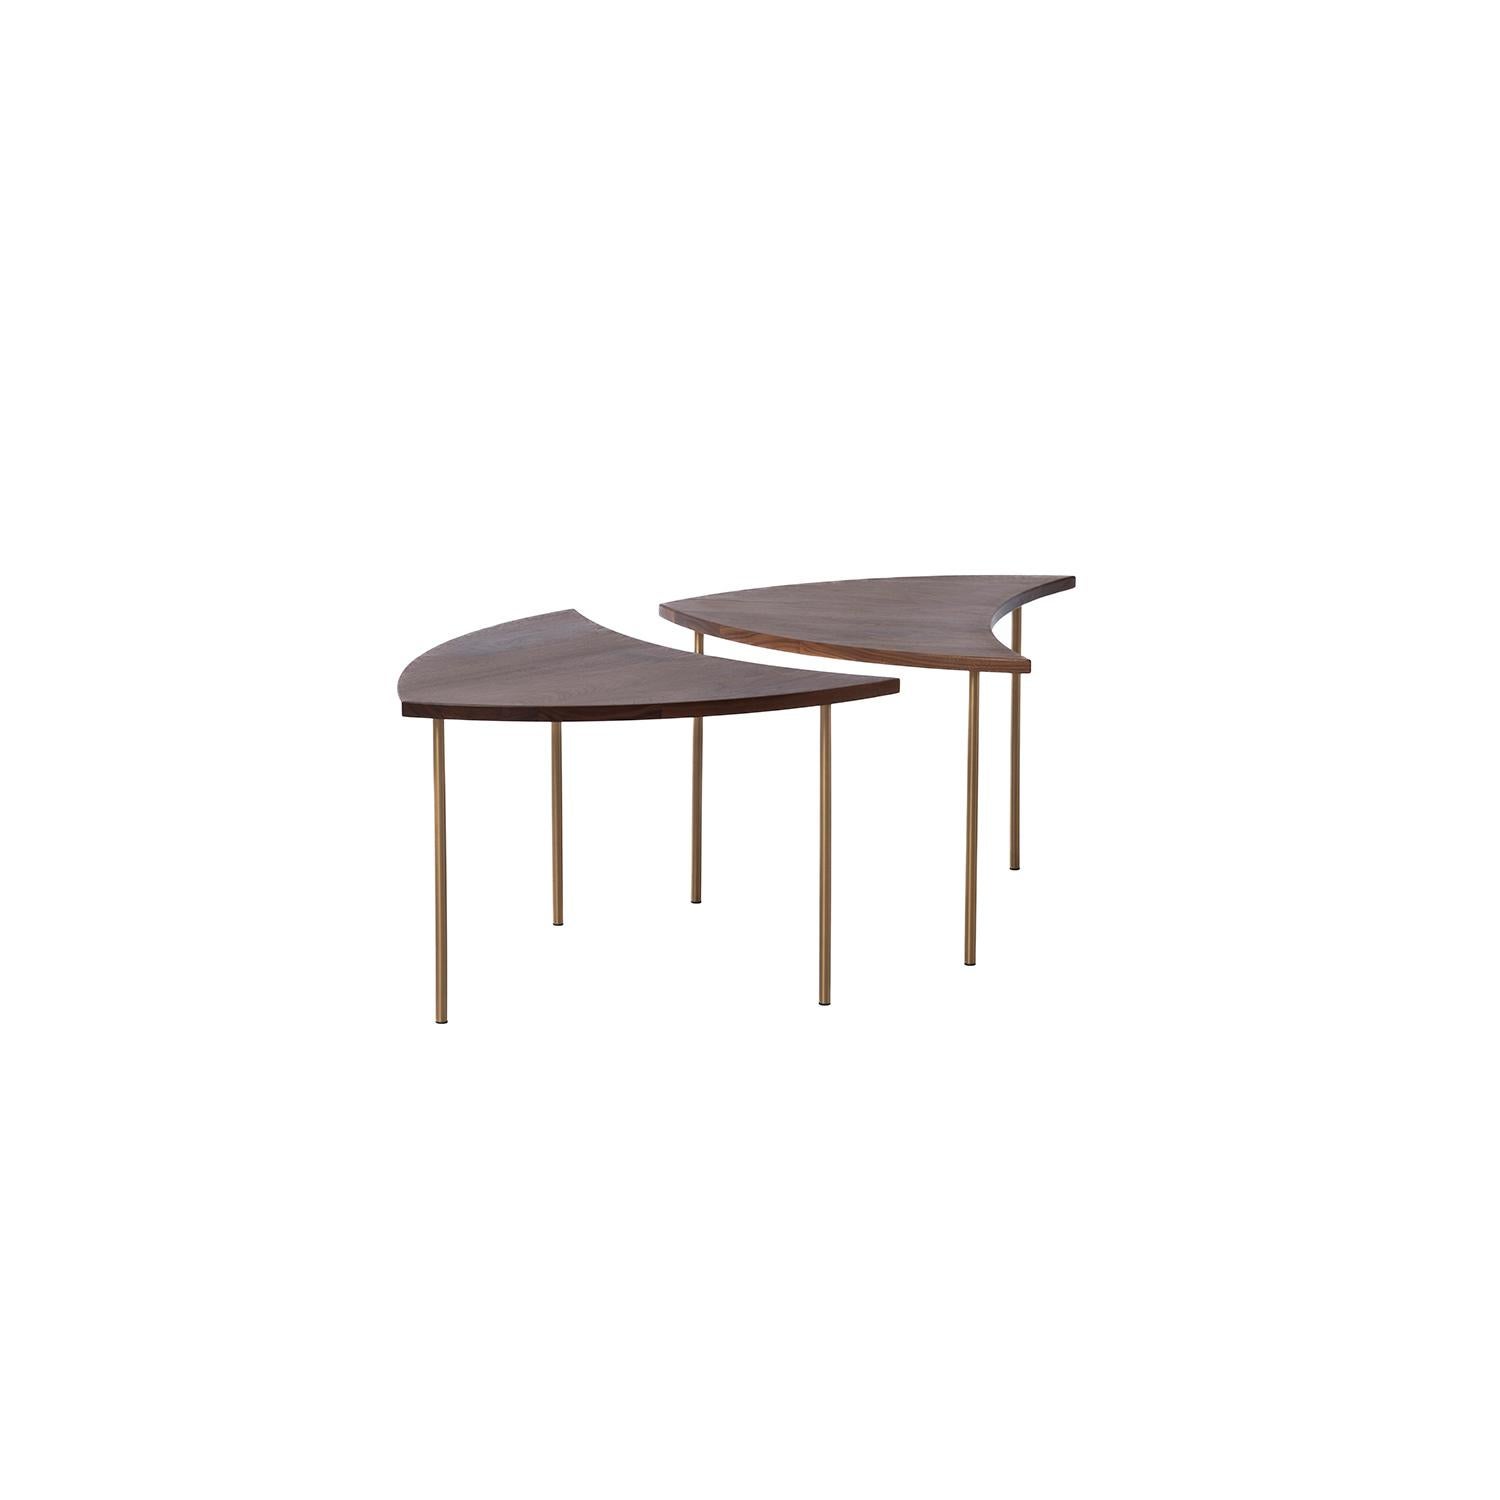 Peter Hvidt & Orla Molgaard-Nielsen ont conçu des tables d'appoint adaptables à la roue à picots. Nouvellement fabriquée en noyer huilé. Six tables sont disponibles. Le prix est par table.
 
La restauration professionnelle et compétente de meubles